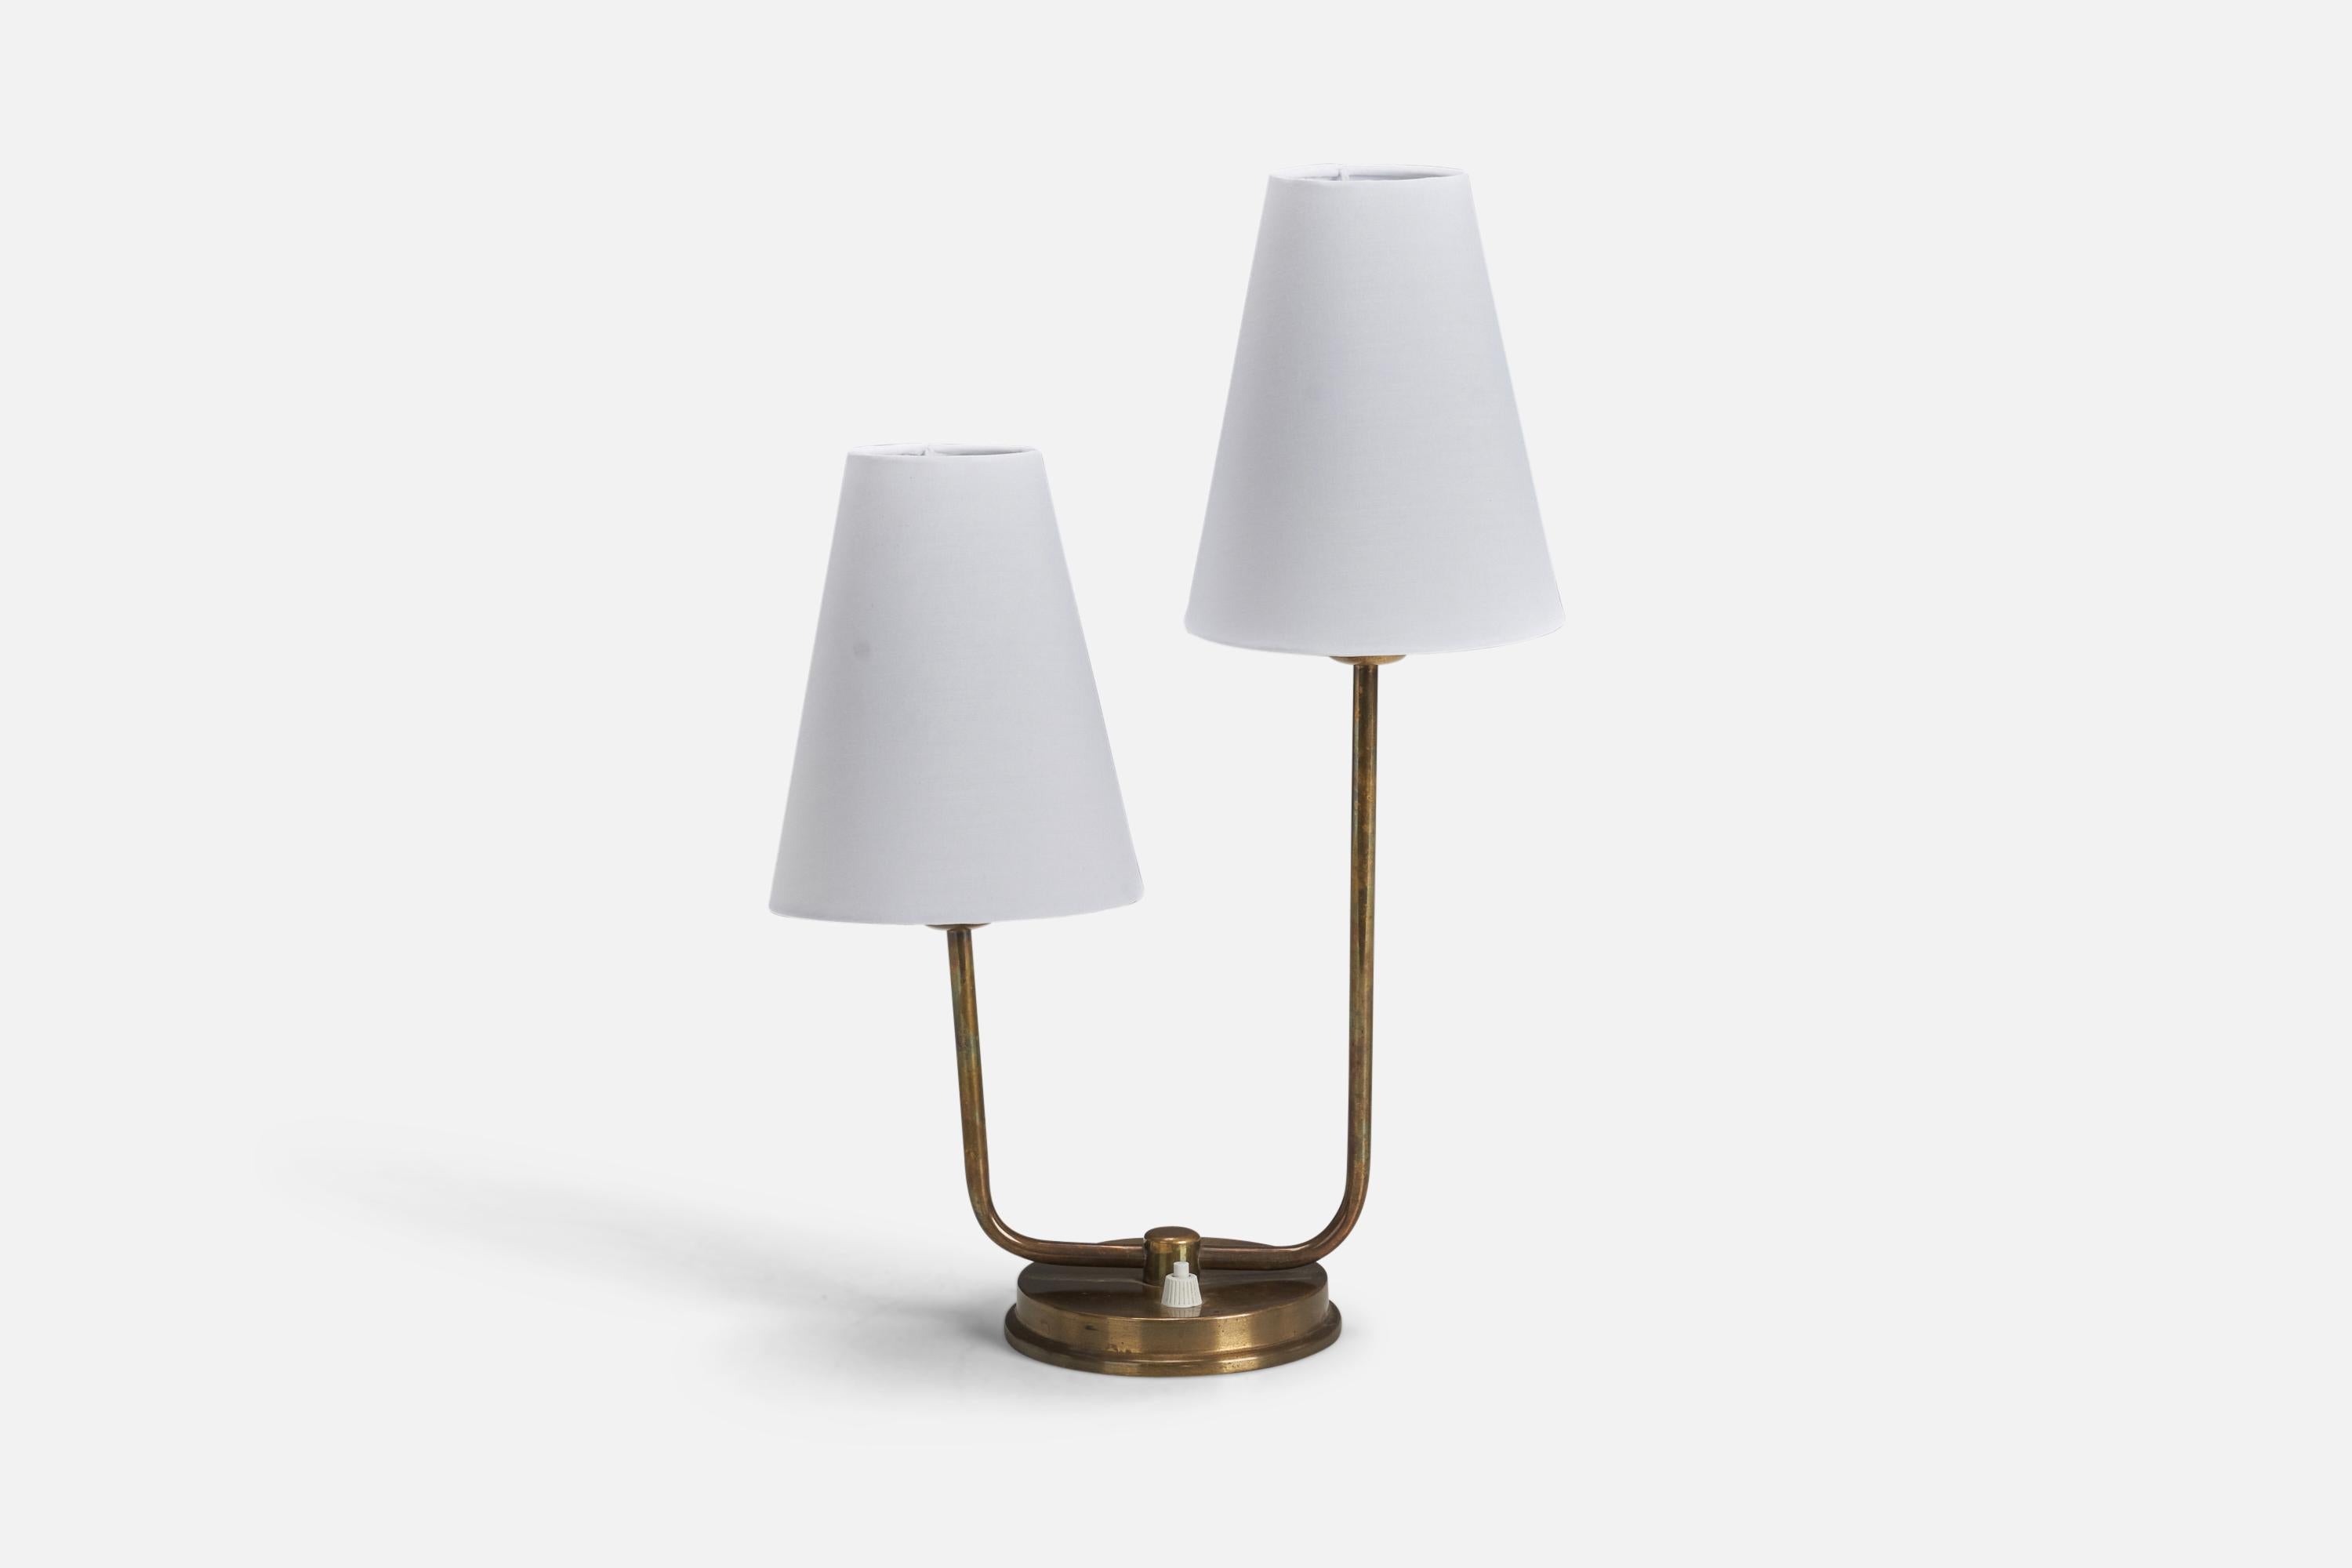 Lampe de table en laiton et tissu conçue et produite par un designer suédois, Suède, années 1940.

Dimensions de la lampe (pouces) : 12.5 x 8 x 5 (Hauteur x Largeur x Profondeur)
Dimensions de l'abat-jour (pouces) : 2.75 x 5.5 x 6.75 (Diamètre